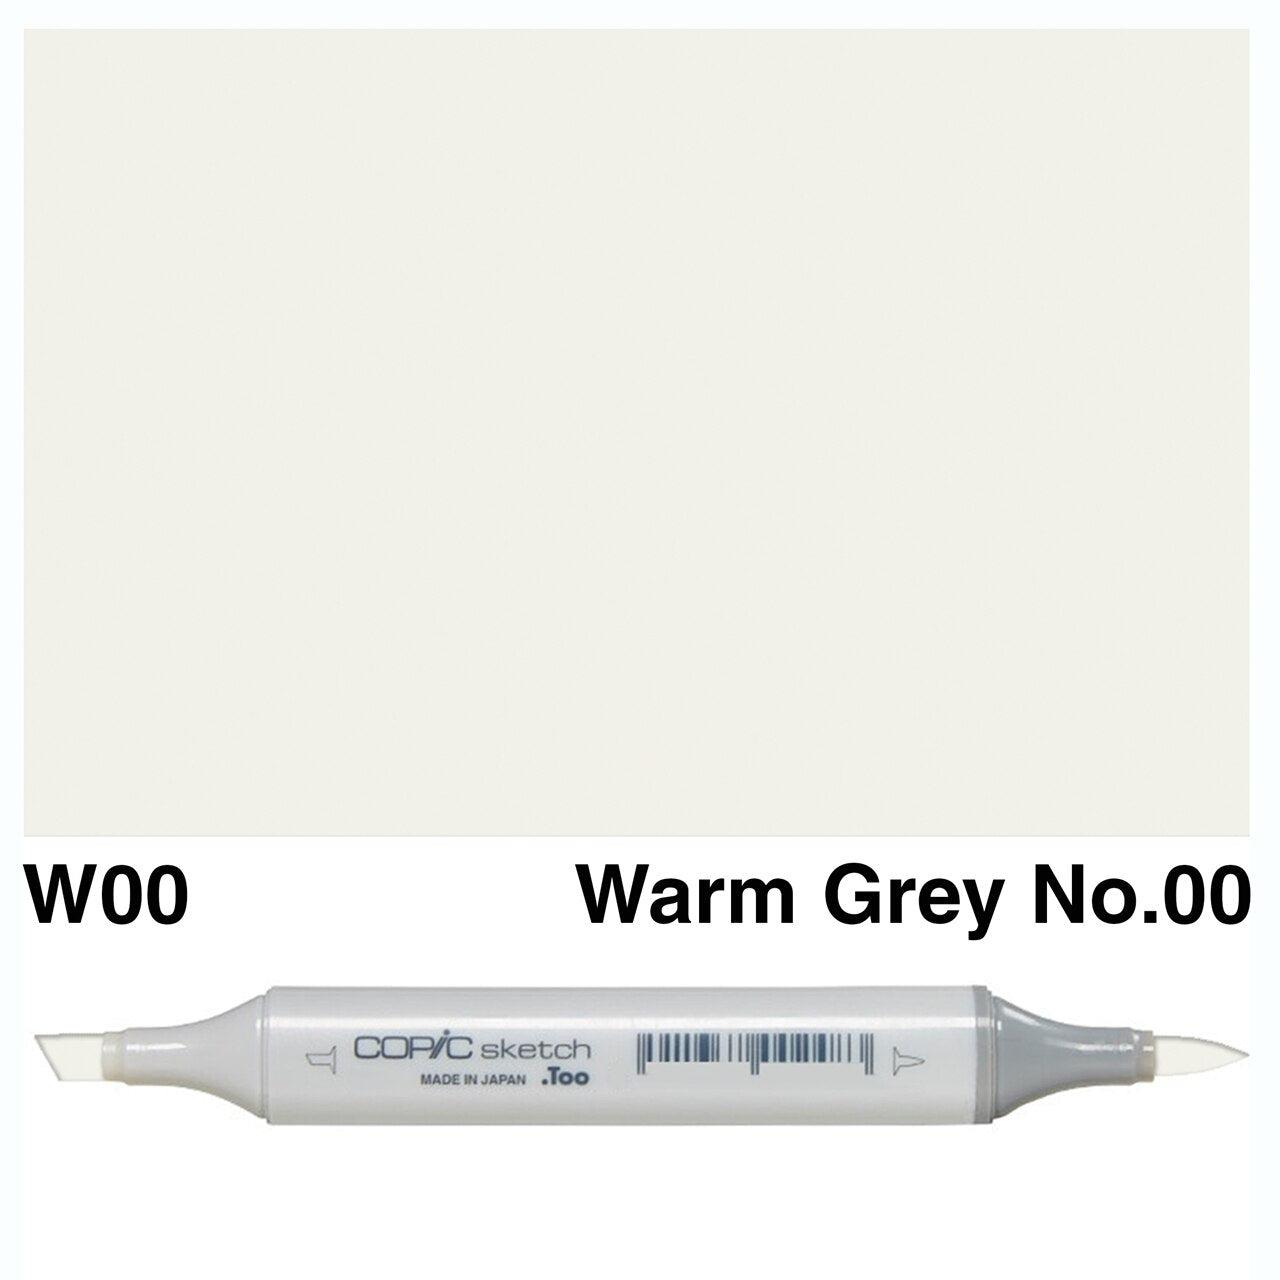 Copic - Sketch Marker - Warm Gray No. 00 - W00-ScrapbookPal